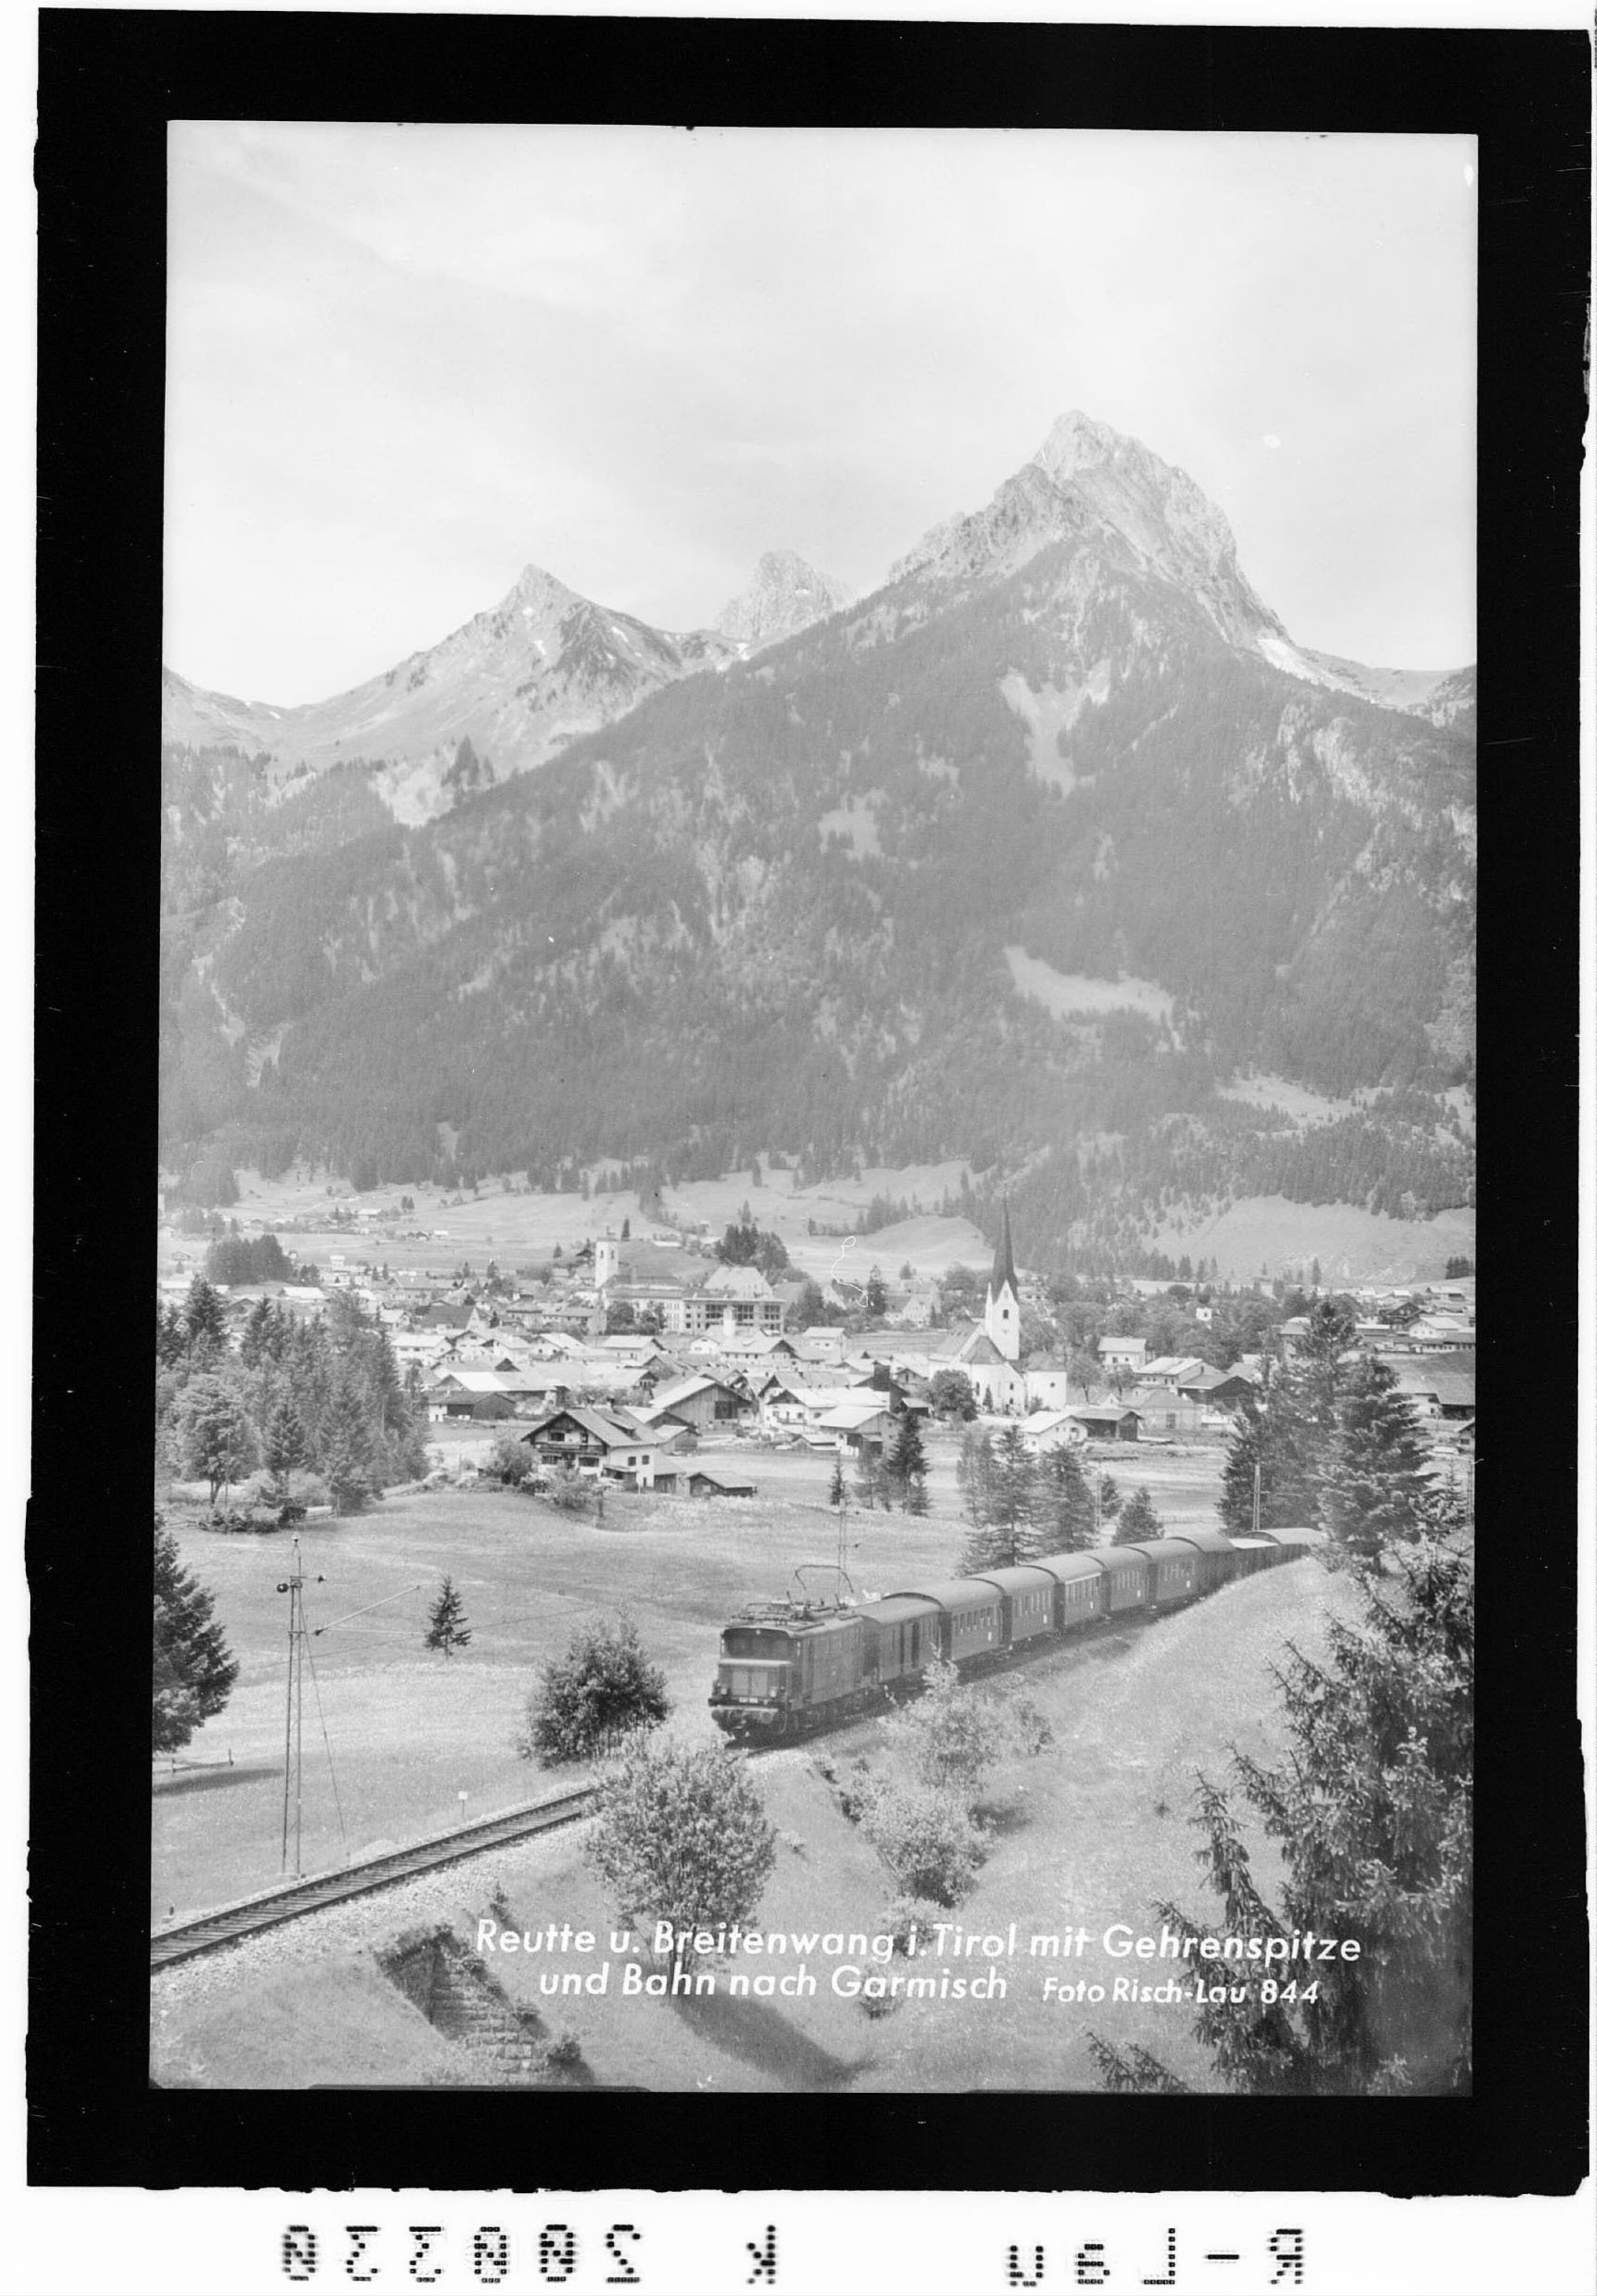 Reutte und Breitenwang in Tirol mit Gehrenspitze und Bahn nach Garmisch></div>


    <hr>
    <div class=